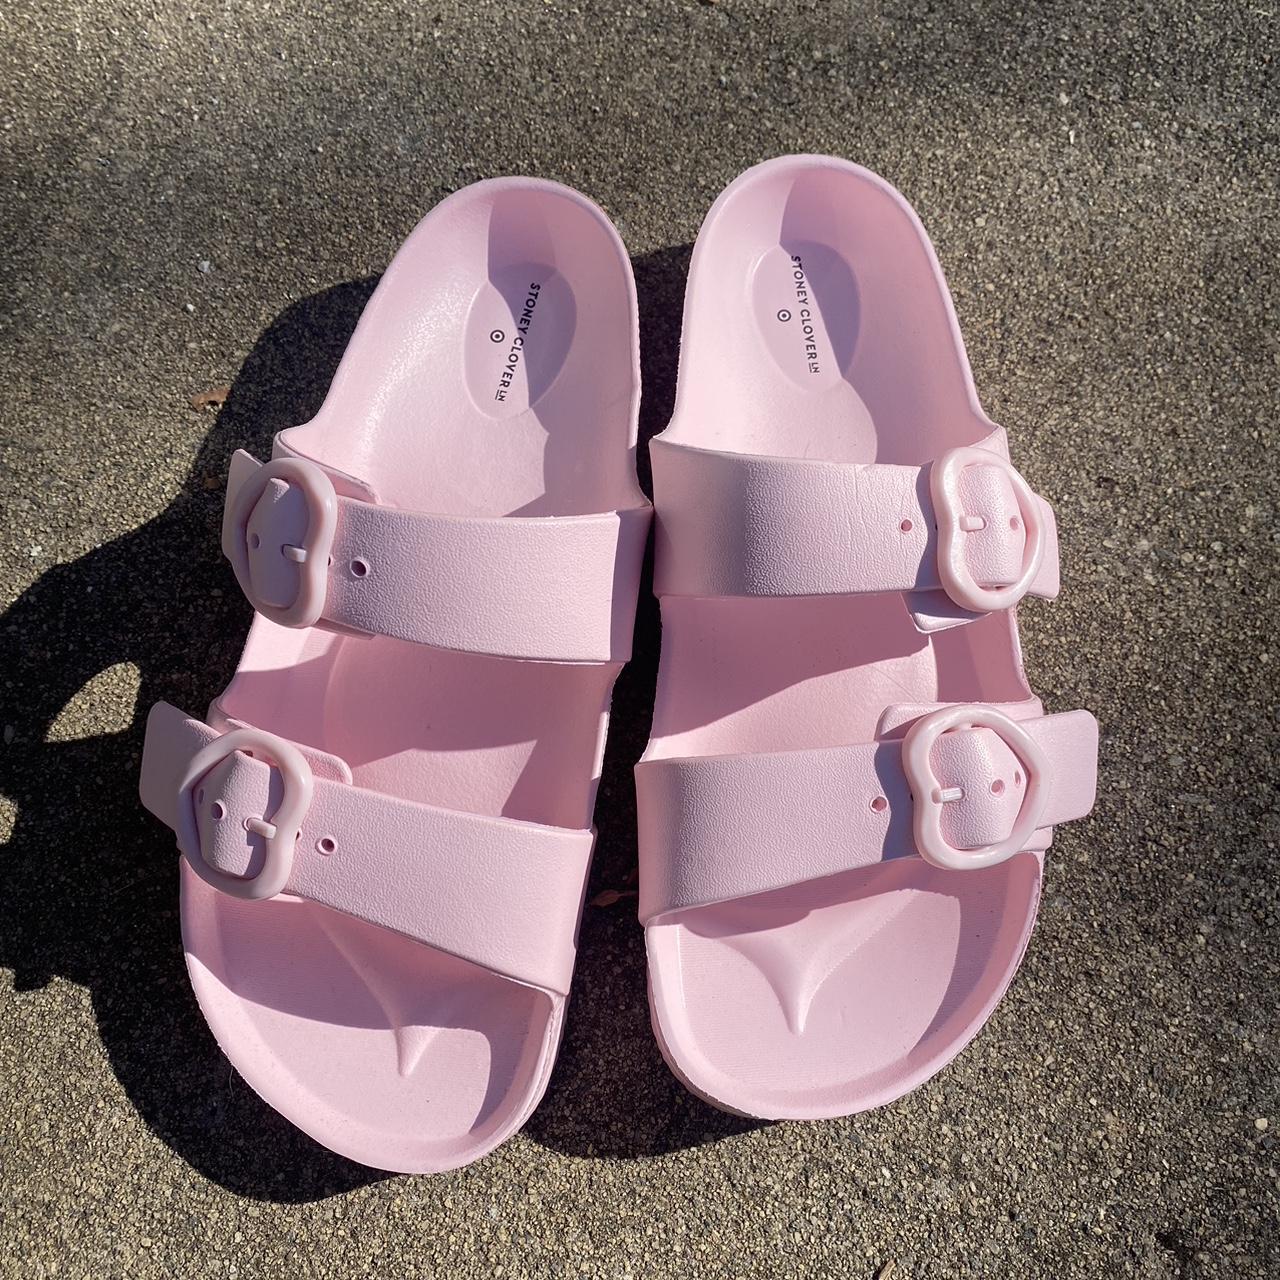 Target Women's Pink Slides (2)